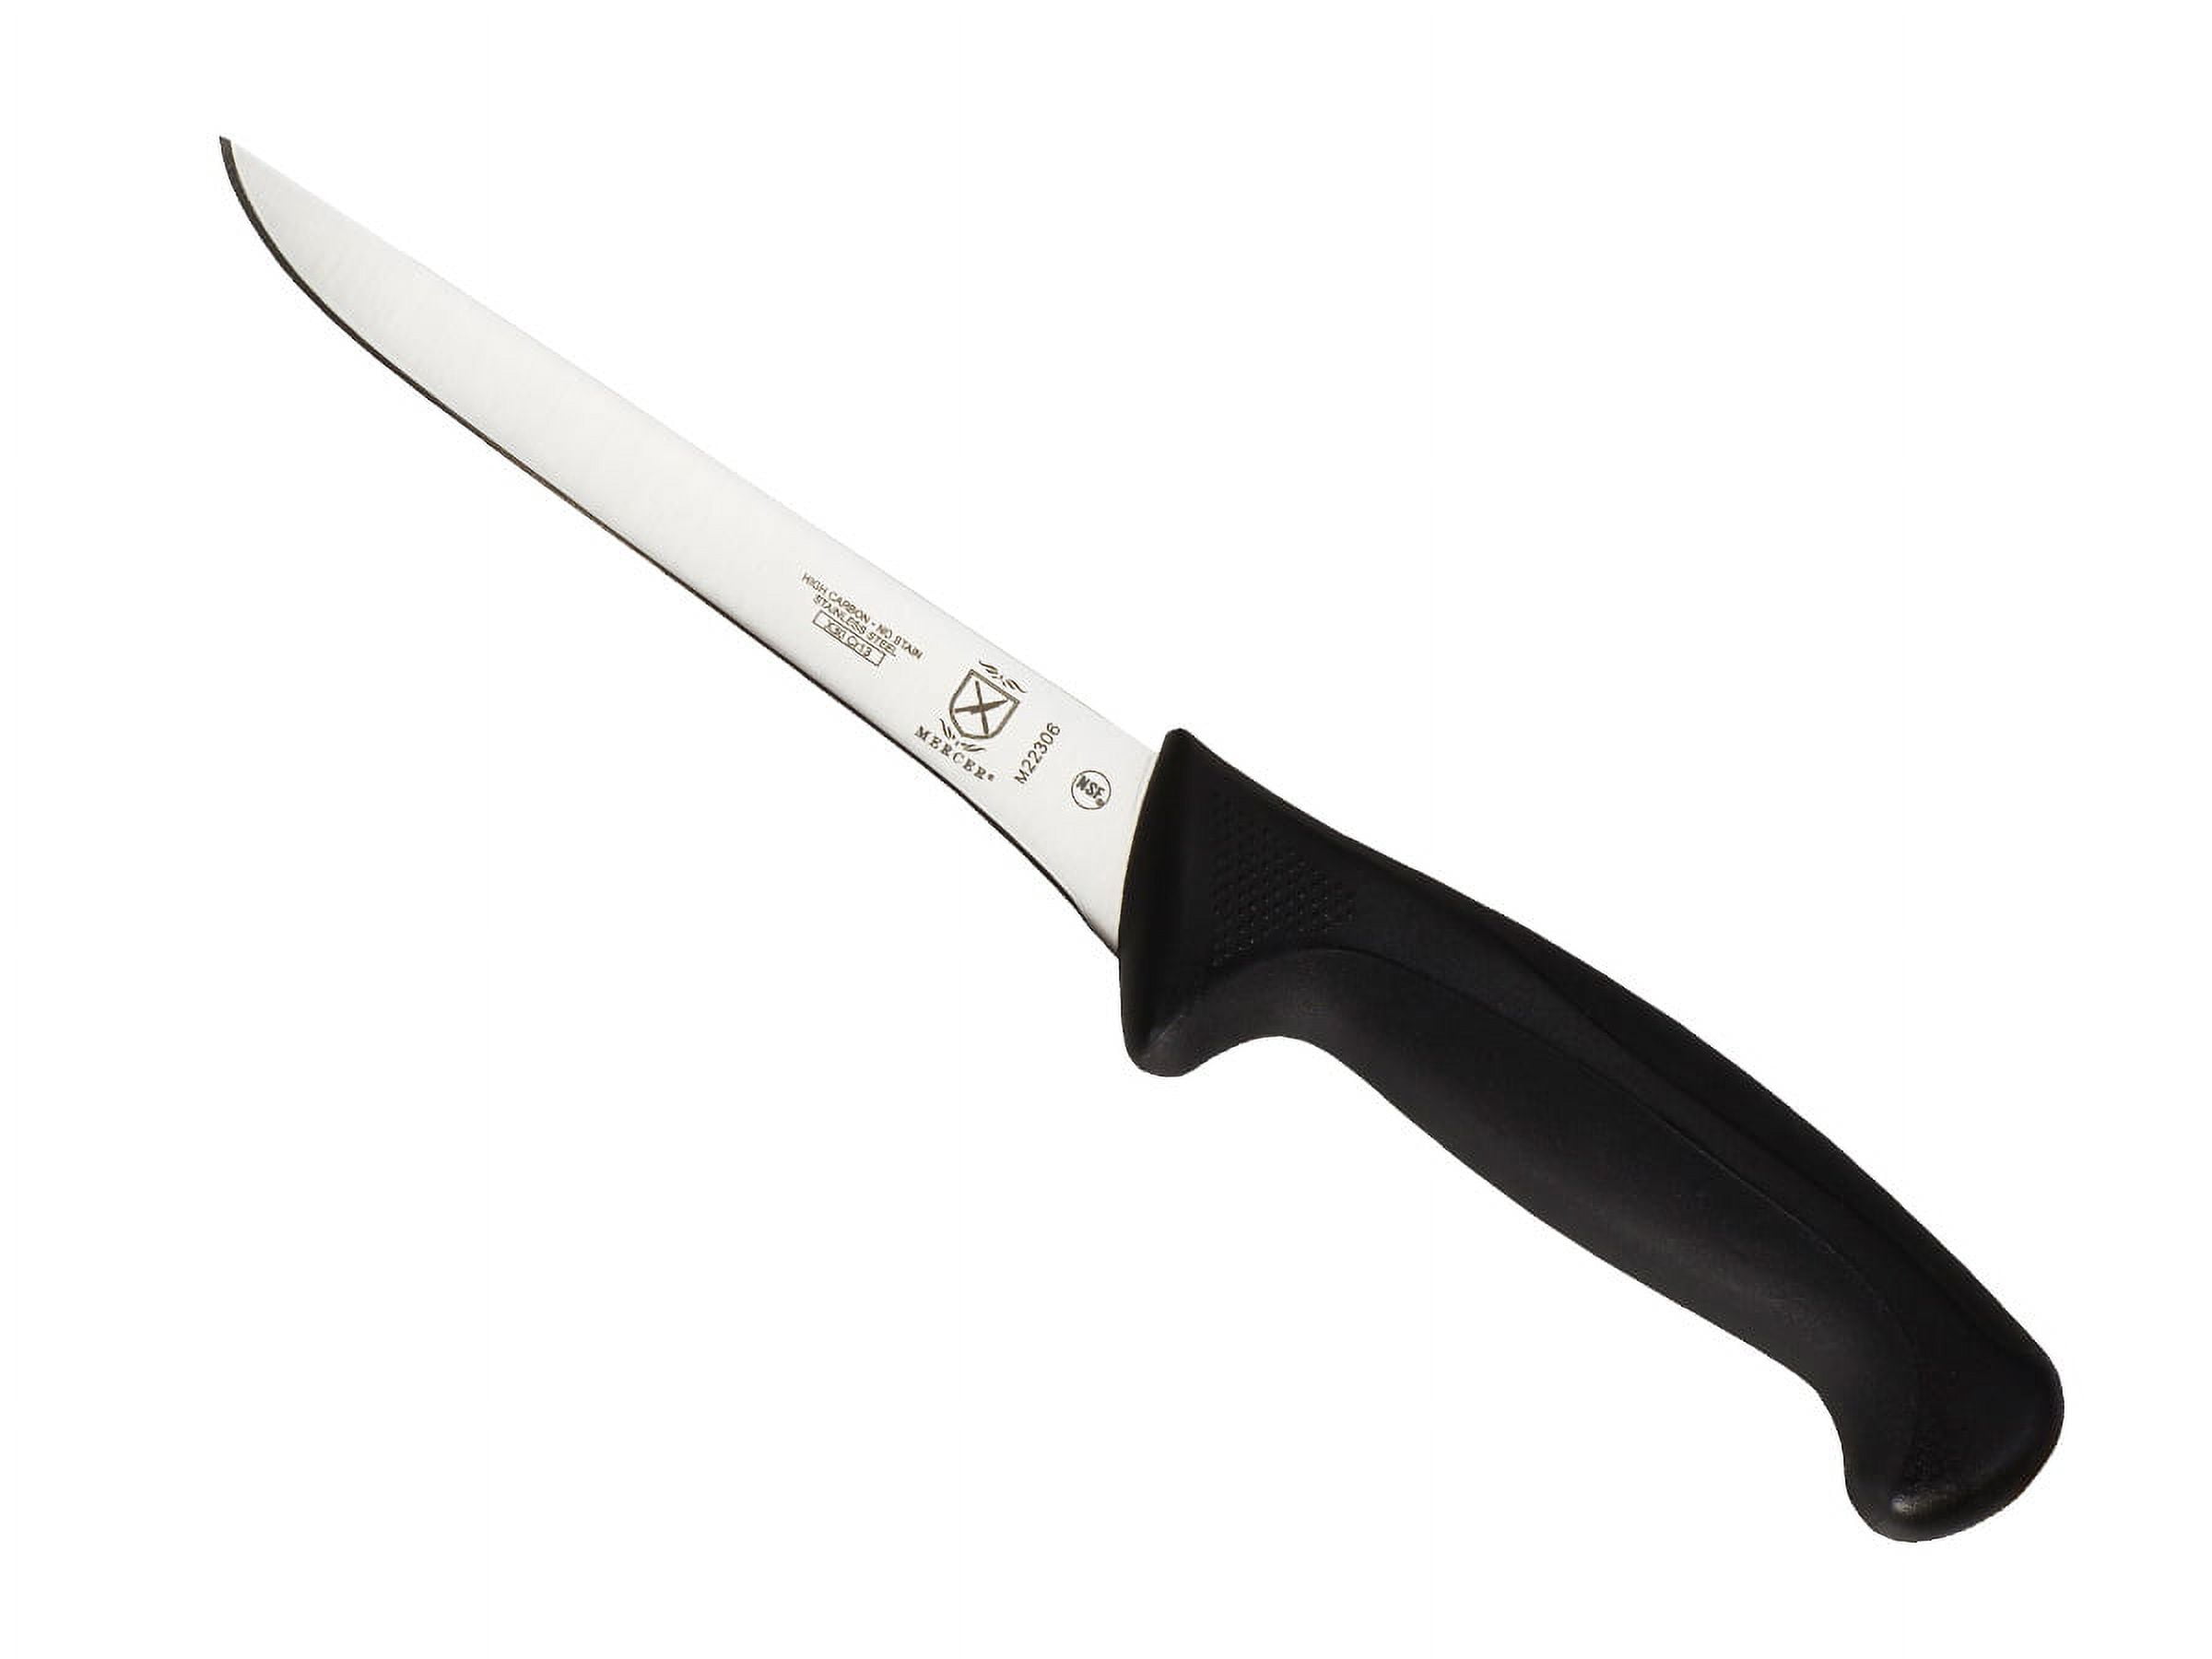 Mercer Cutlery Millennia 5 Piece High Carbon Stainless Steel Knife Block  Set & Reviews